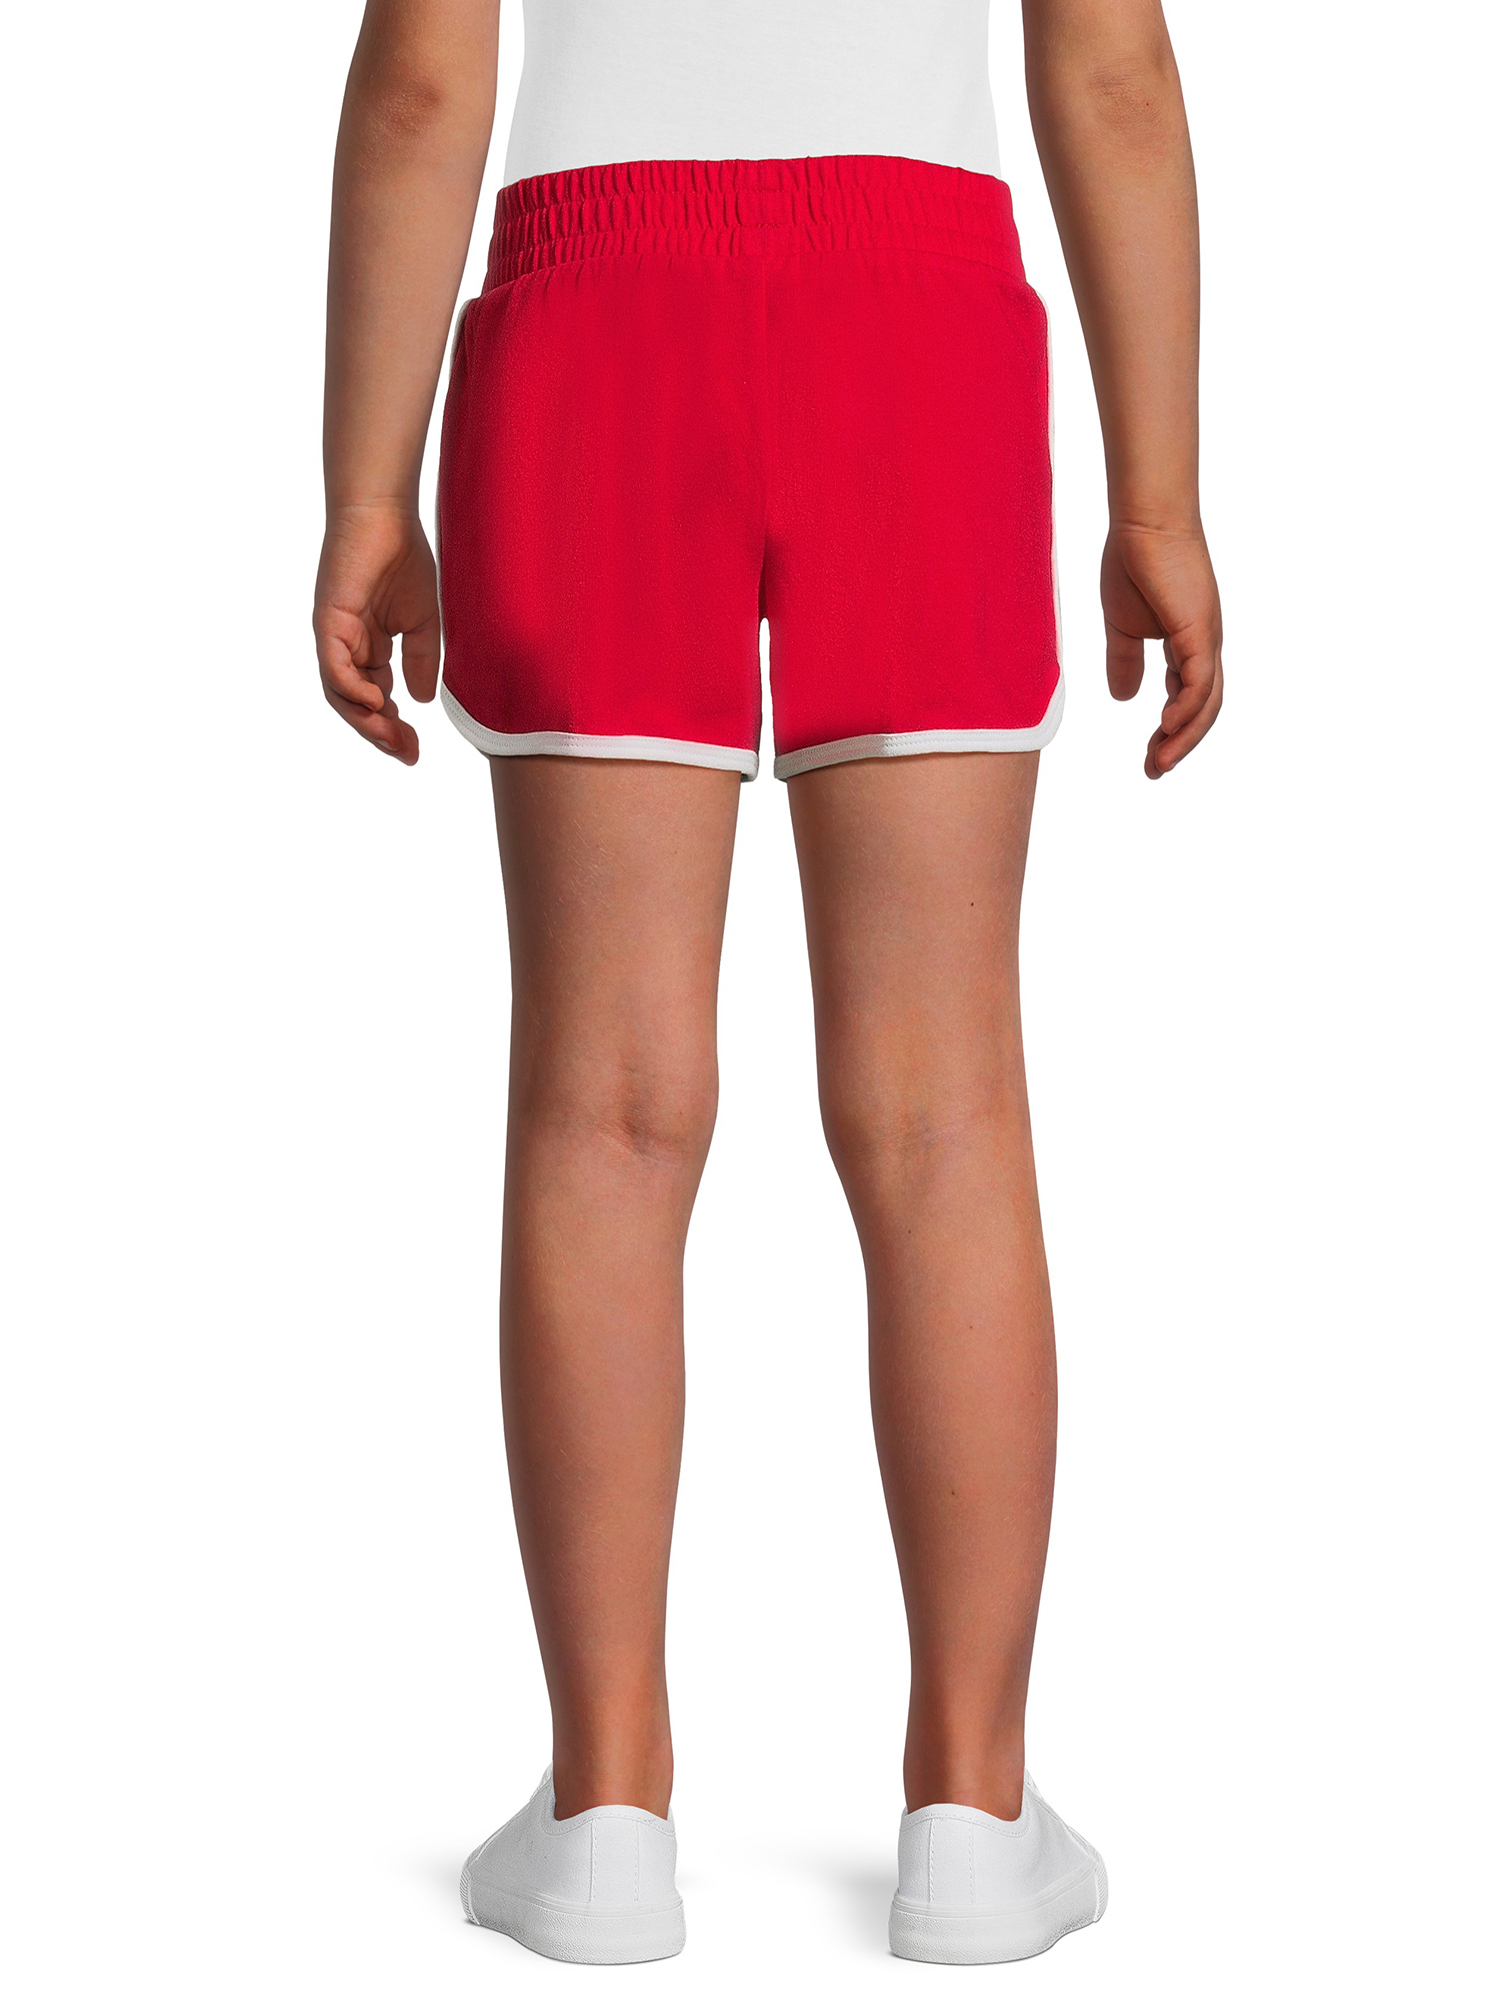 Wonder Nation Girls Dolphin Shorts, Sizes XS-XL & Plus - image 4 of 5